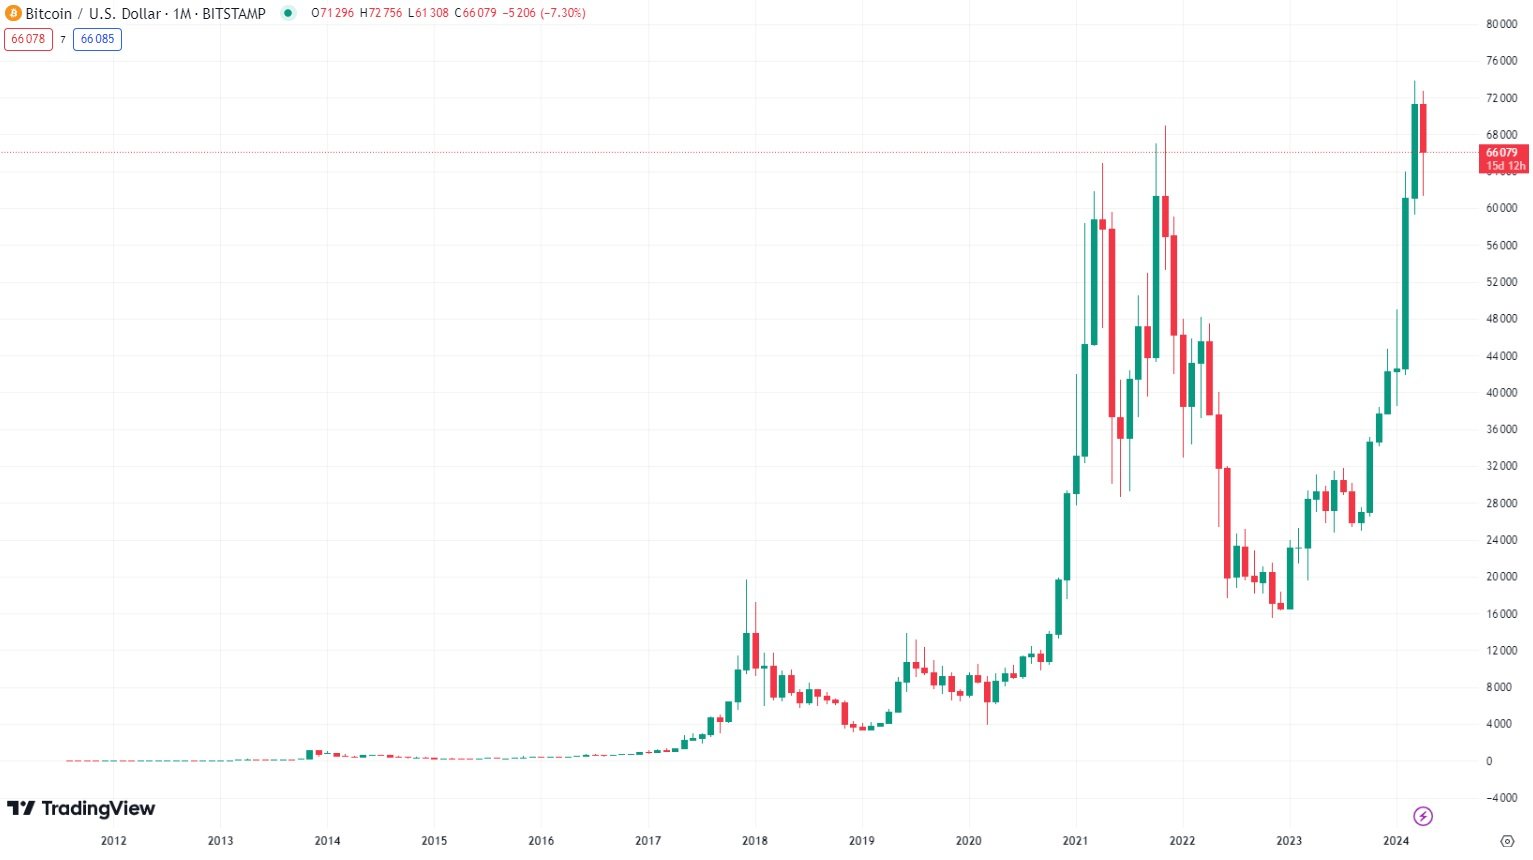 Kompletní cenová historie bitcoinu a průlom ceny nad 70 000 dolarů